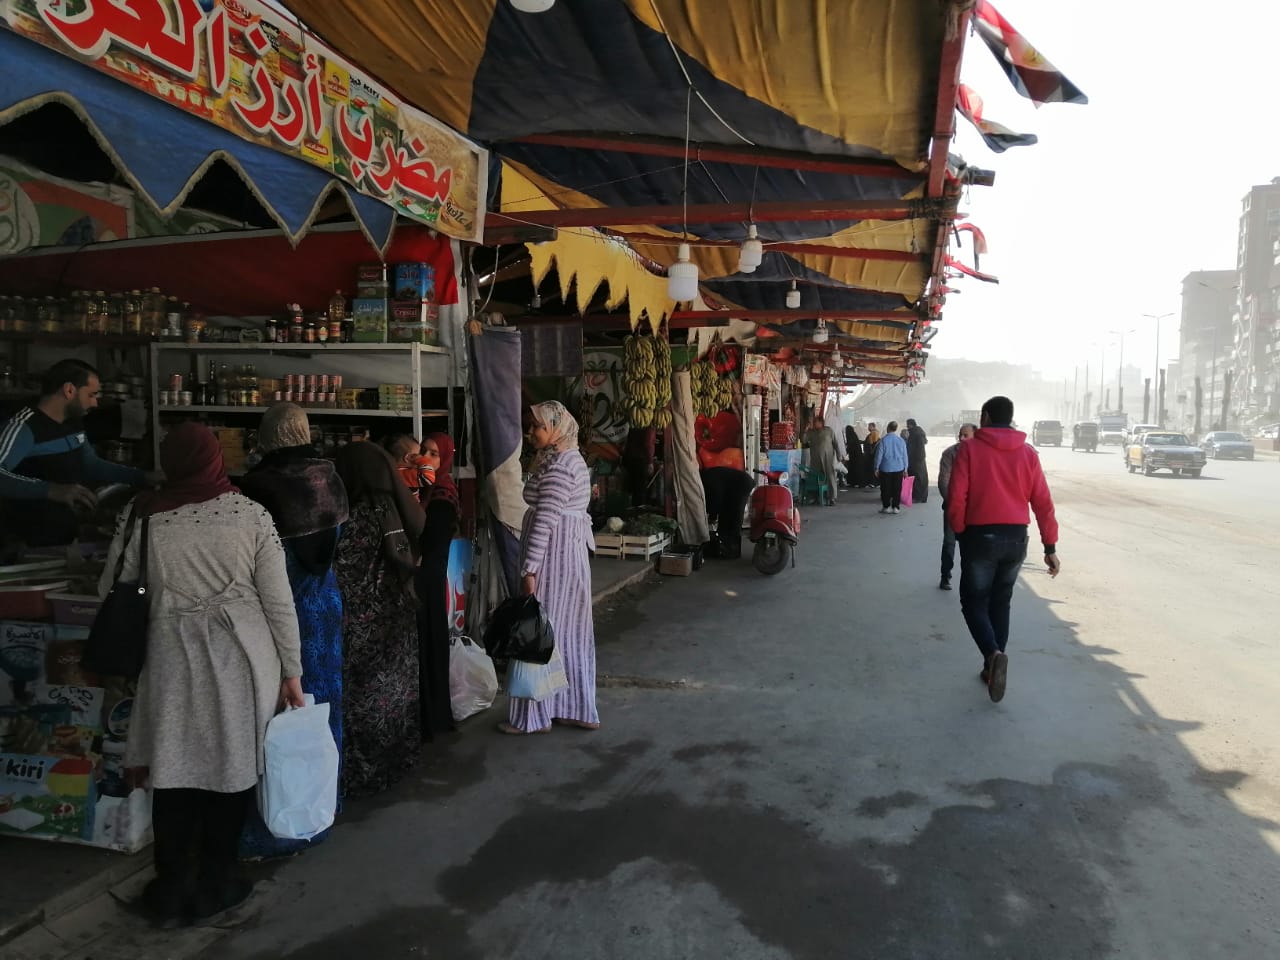 أسواق محافظة الغربية (3)